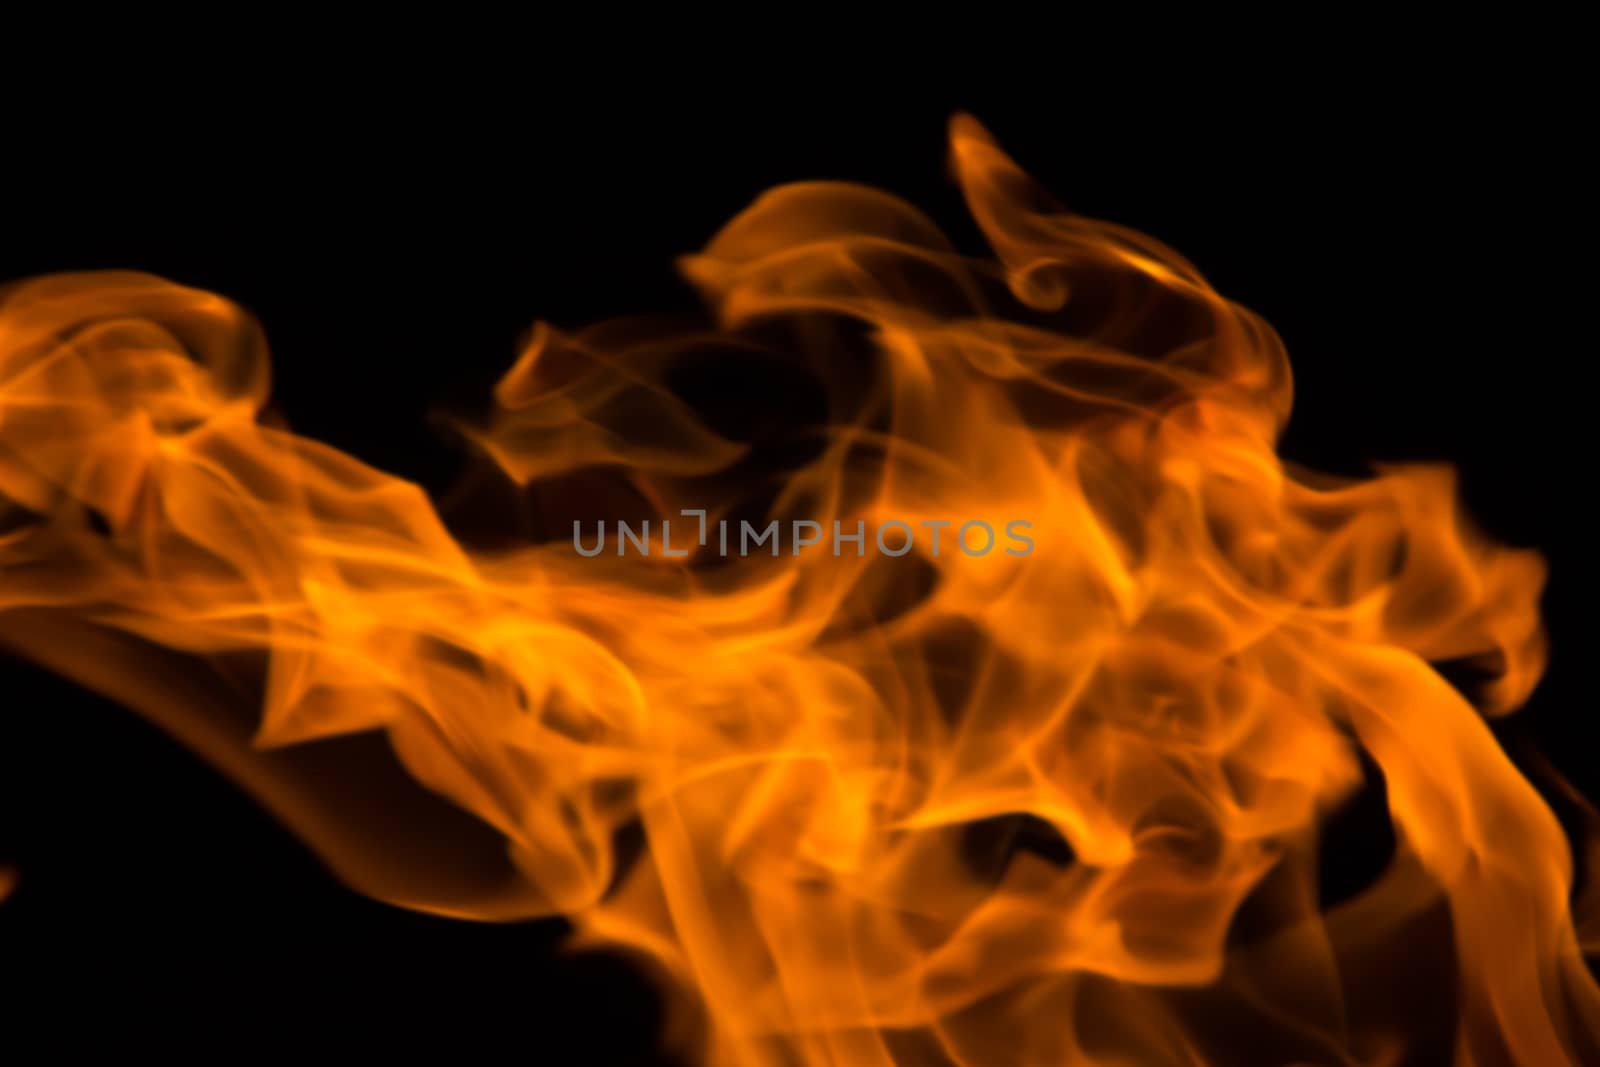 fire background blur by liwei12